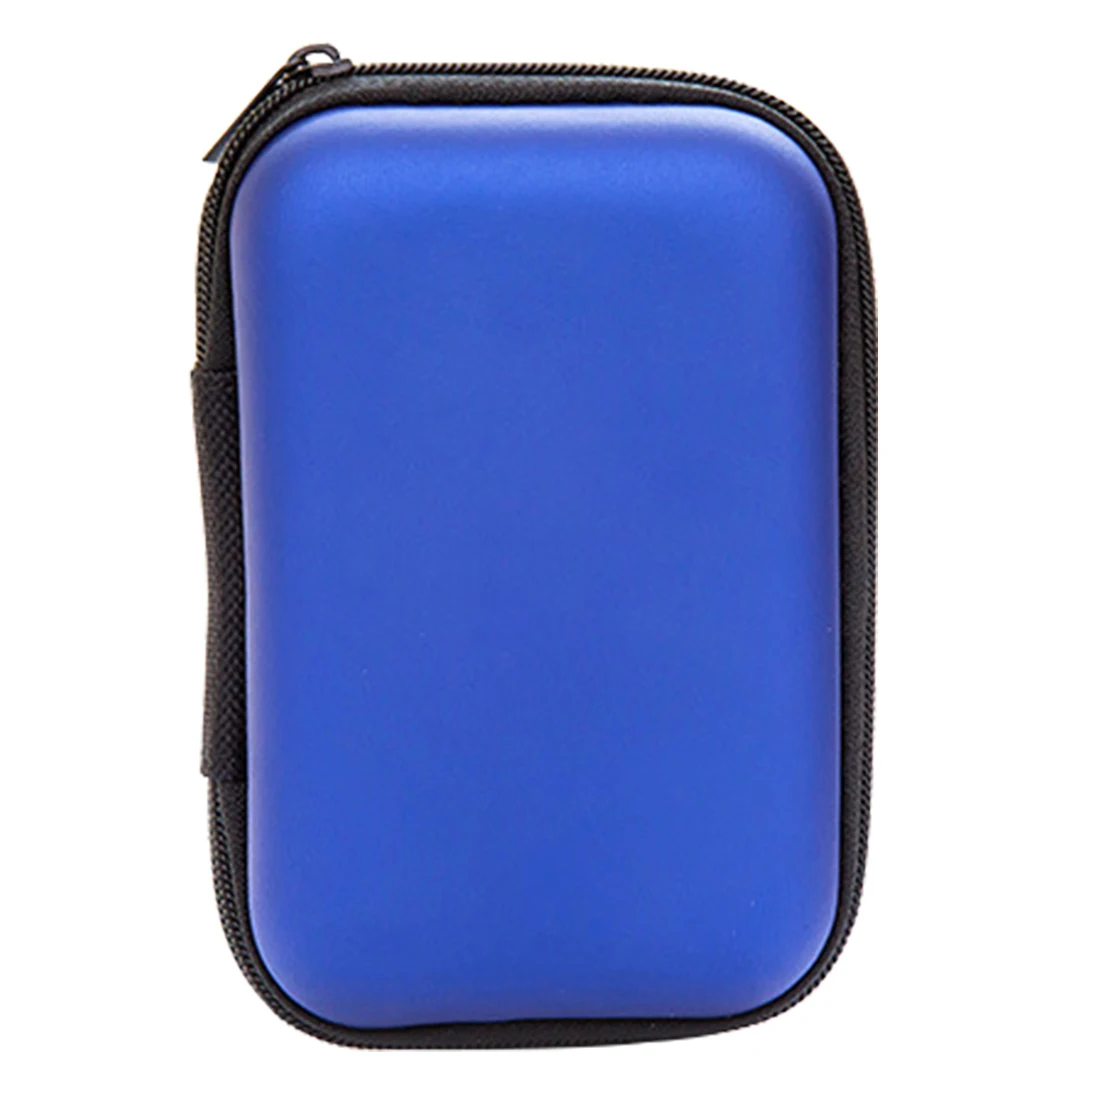 Мини Портативный Жесткий Чехол для наушников PU кожаный чехол для наушников на молнии сумка для хранения Защитный usb-кабель Органайзер коробка для наушников - Цвет: Sapphire